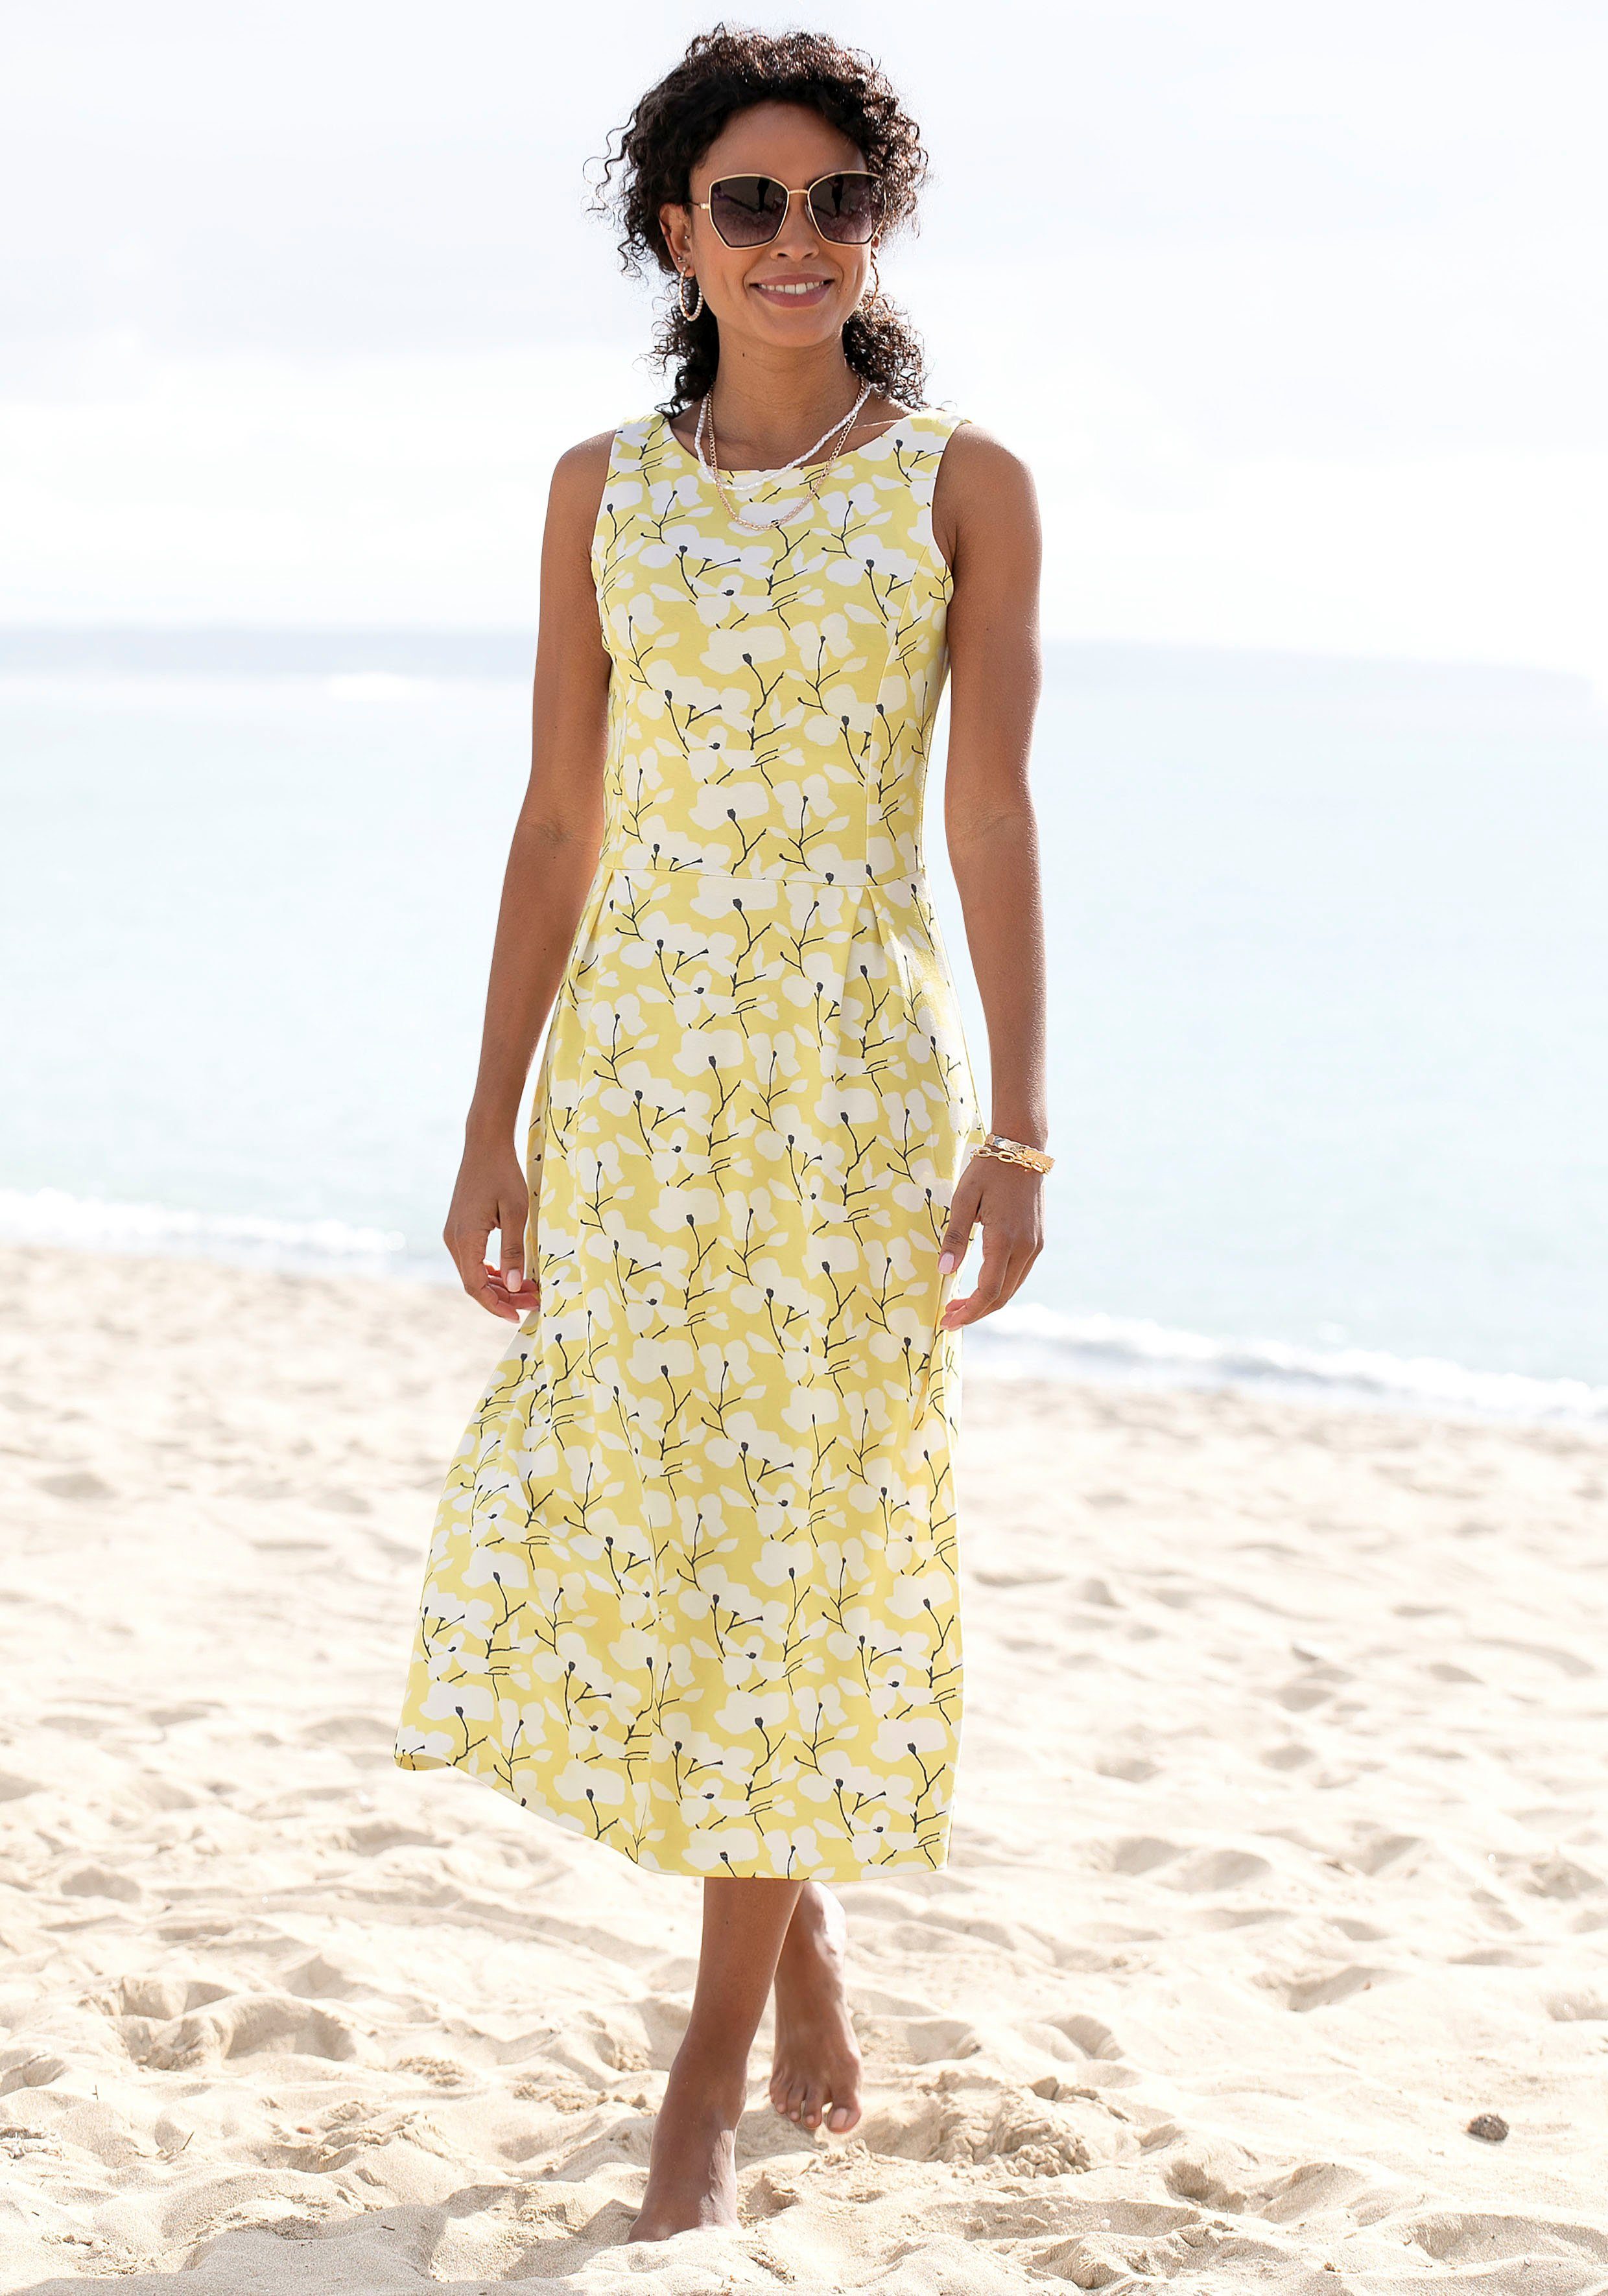 Beachtime Sommerkleid mit Blumendruck, Strandmode, Strandbekleidung gelb-creme-bedruckt